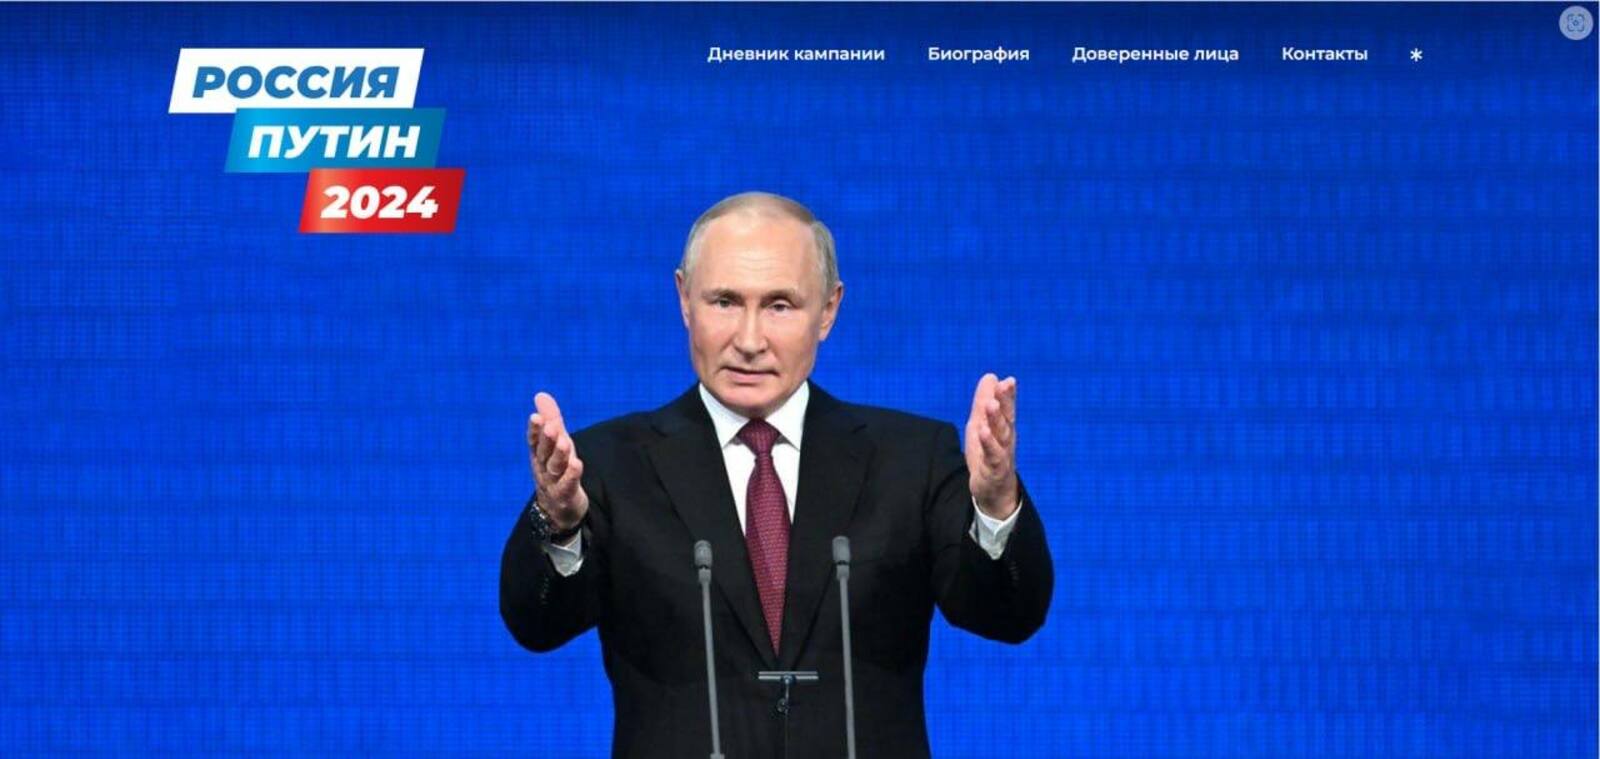 Рәсәй Президентына кандидат Владимир Путиндың сайты эшләй башланы